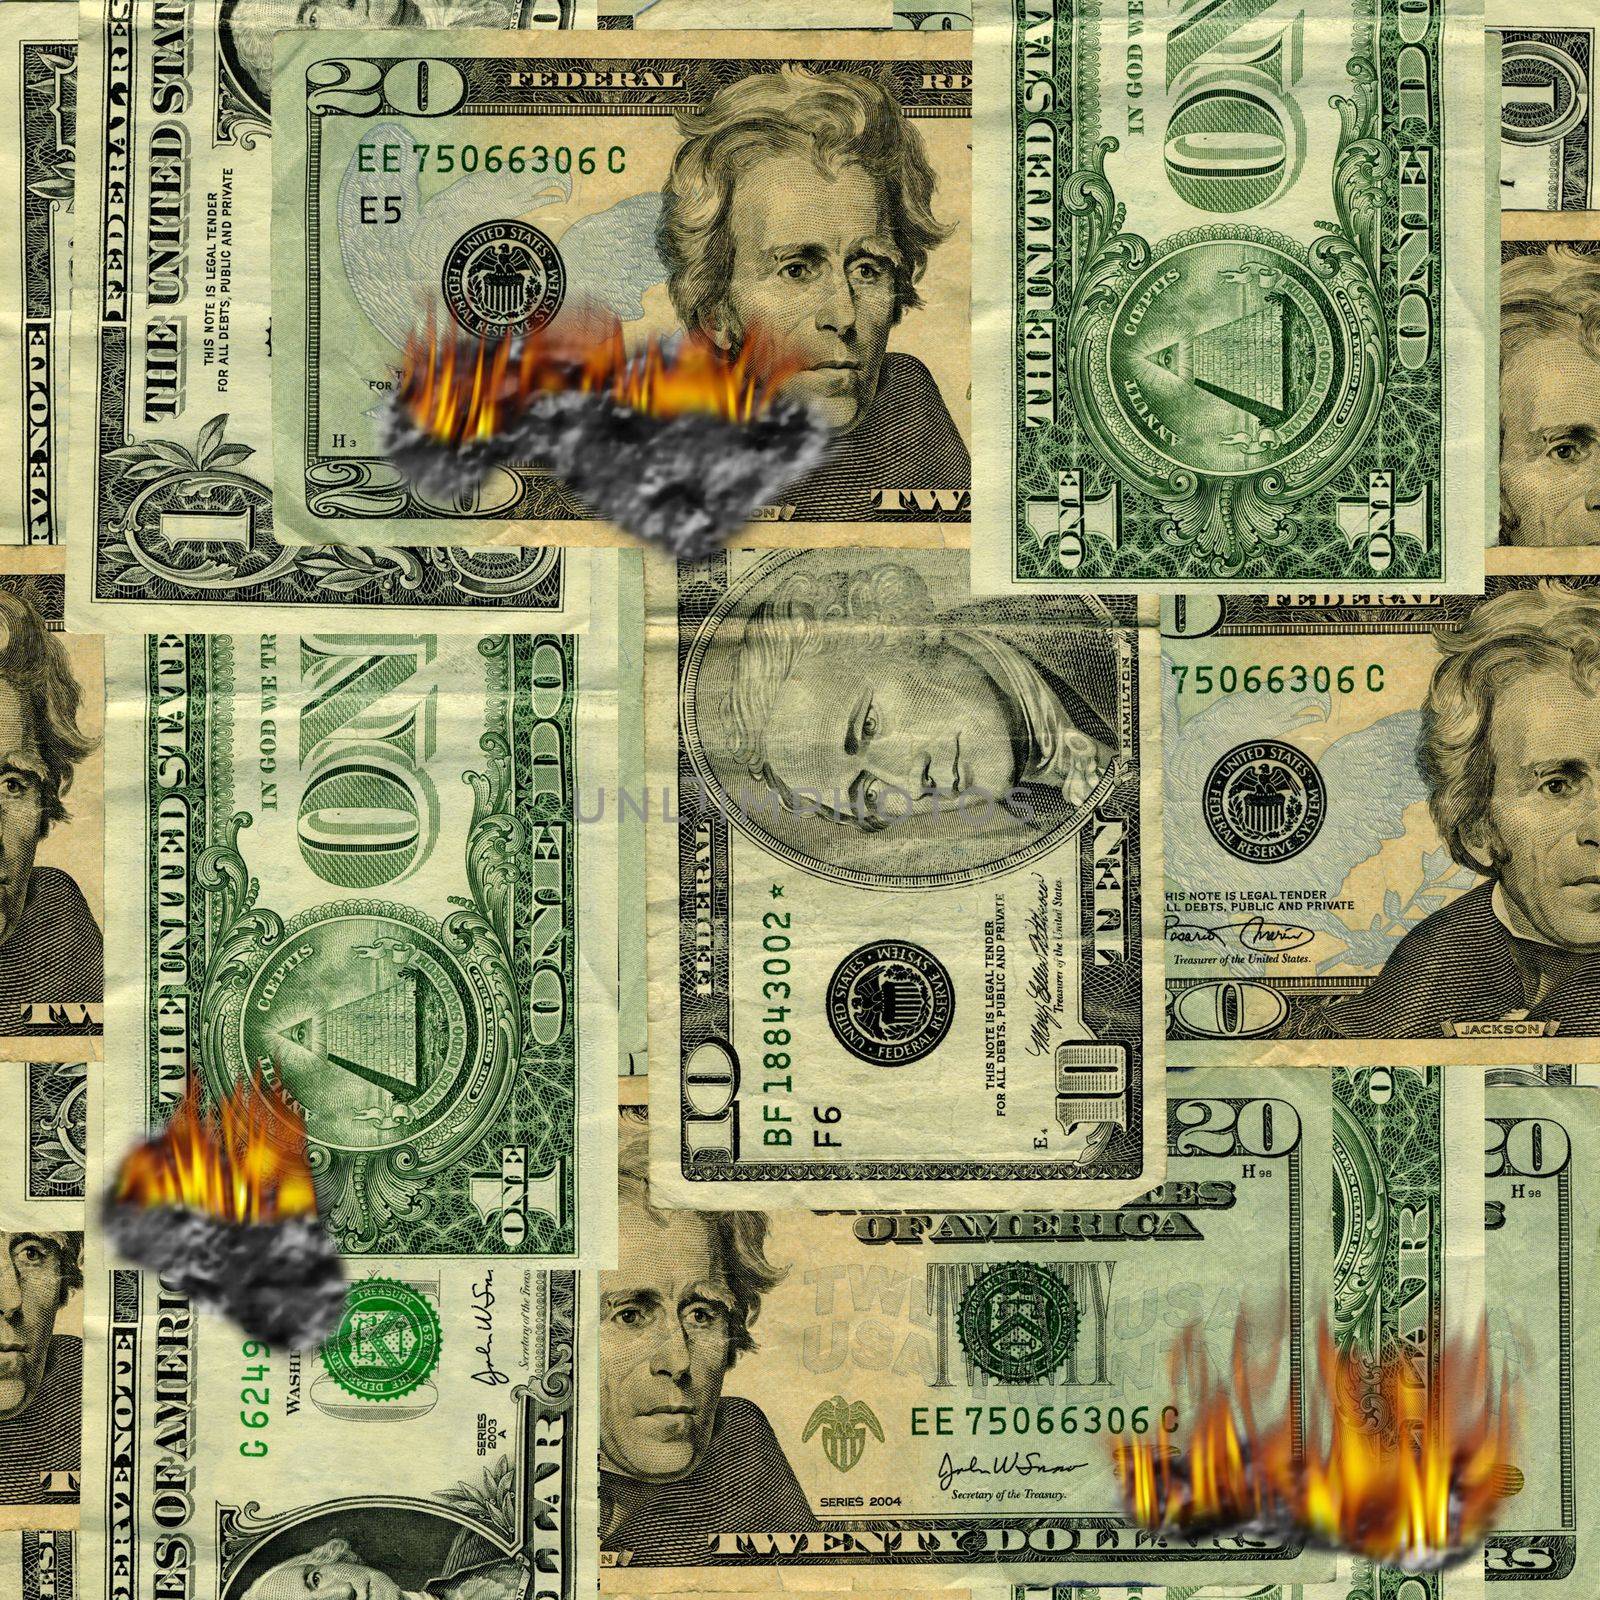 Burning US dollars bills pattern